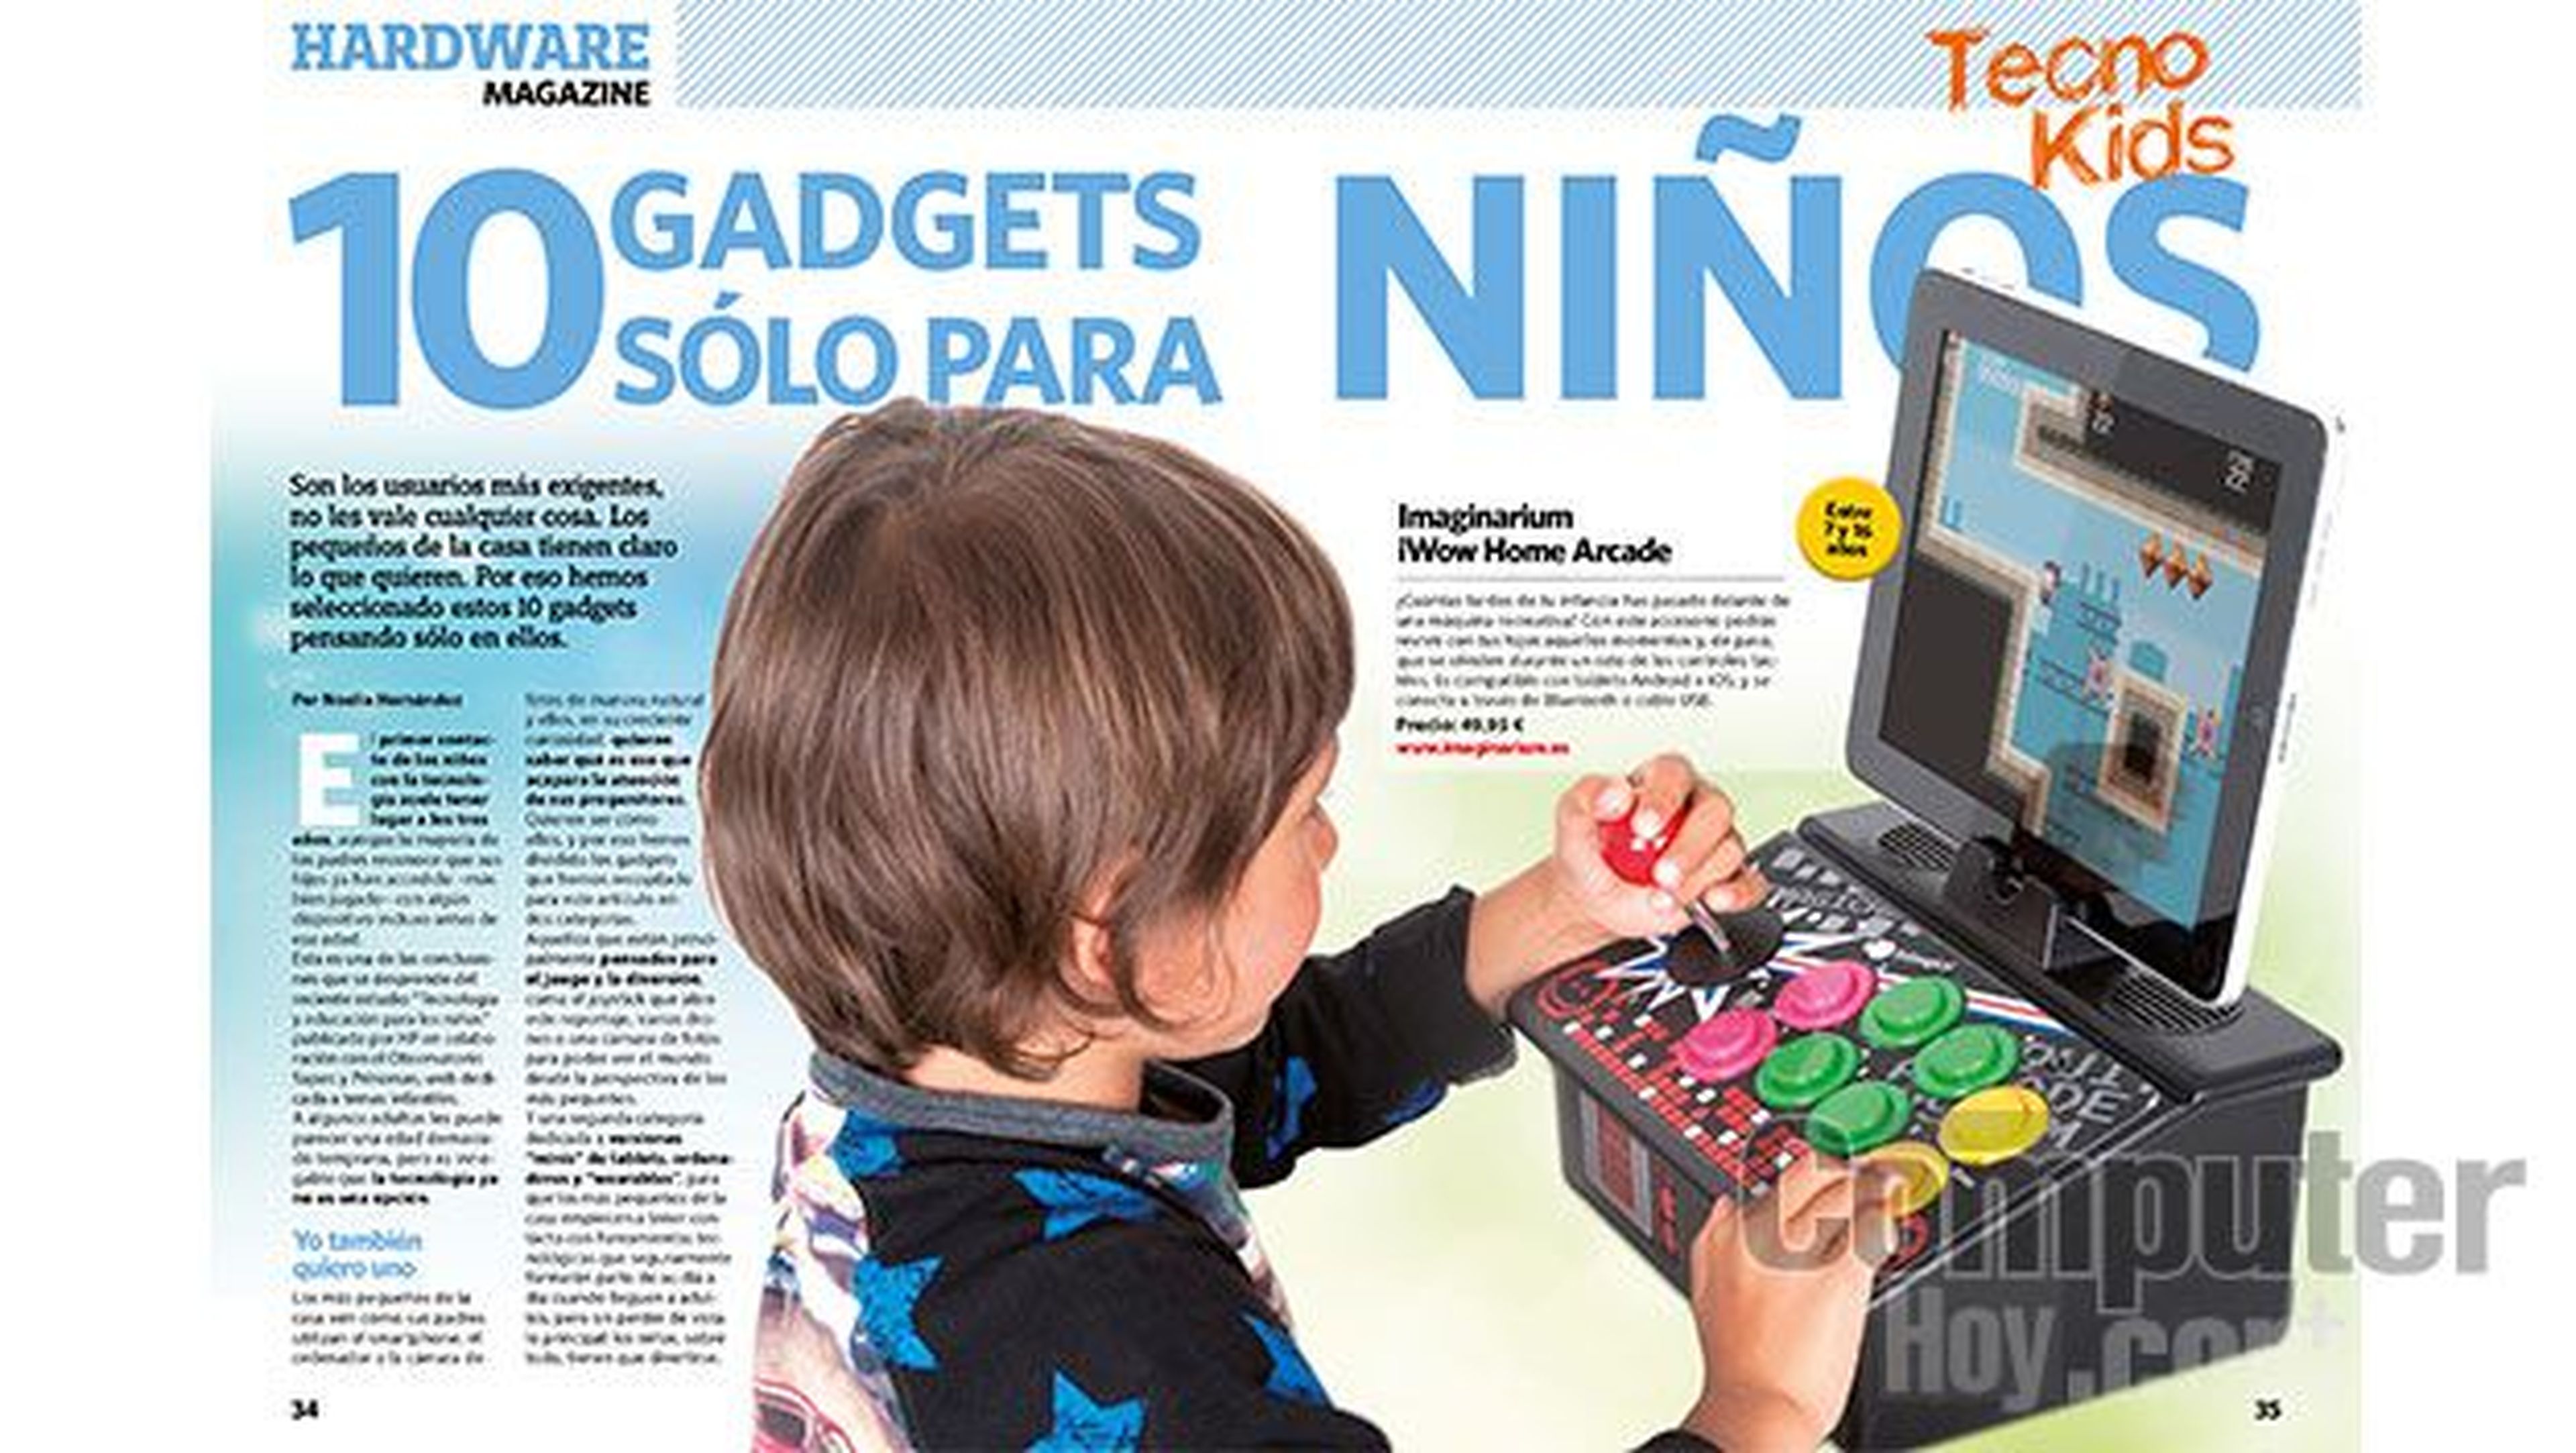 10 Gadgets sólo para niños